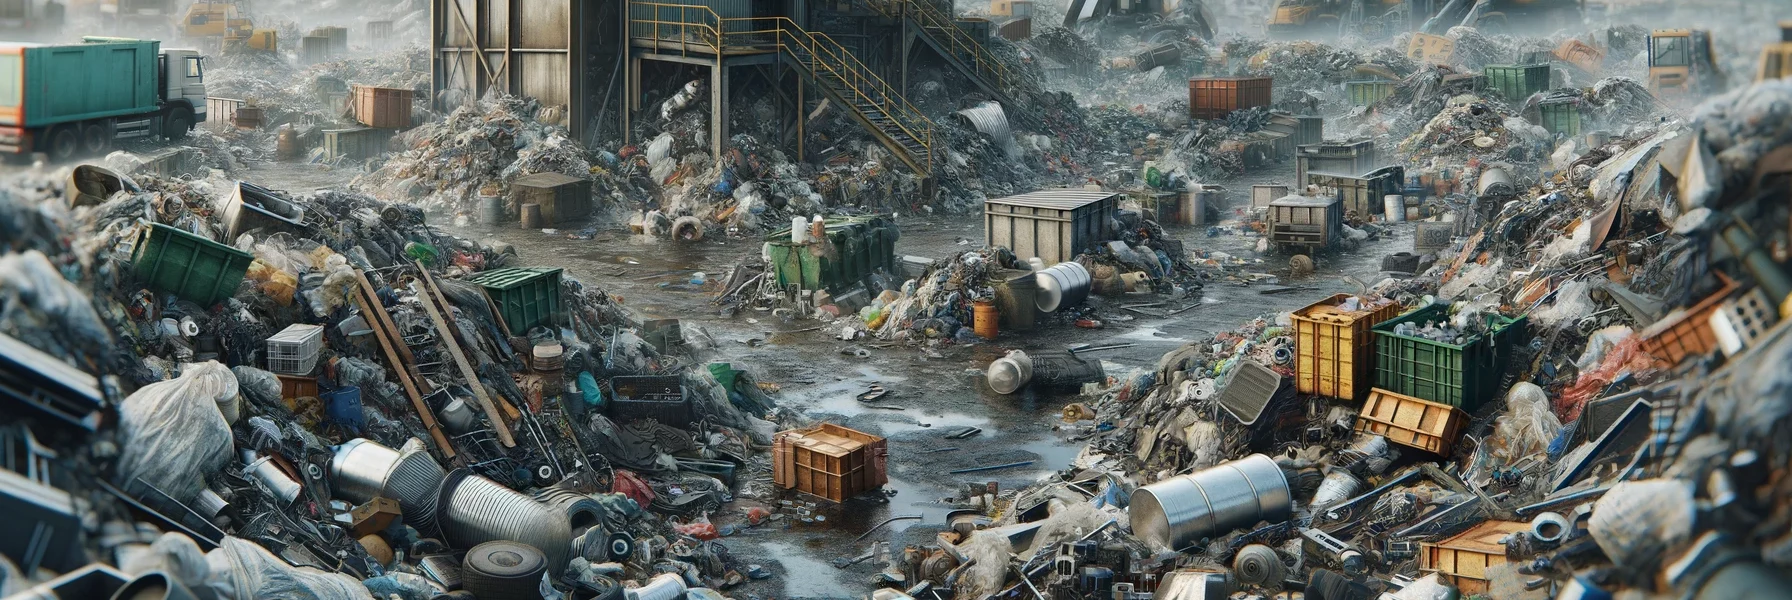 déchets industriels banals